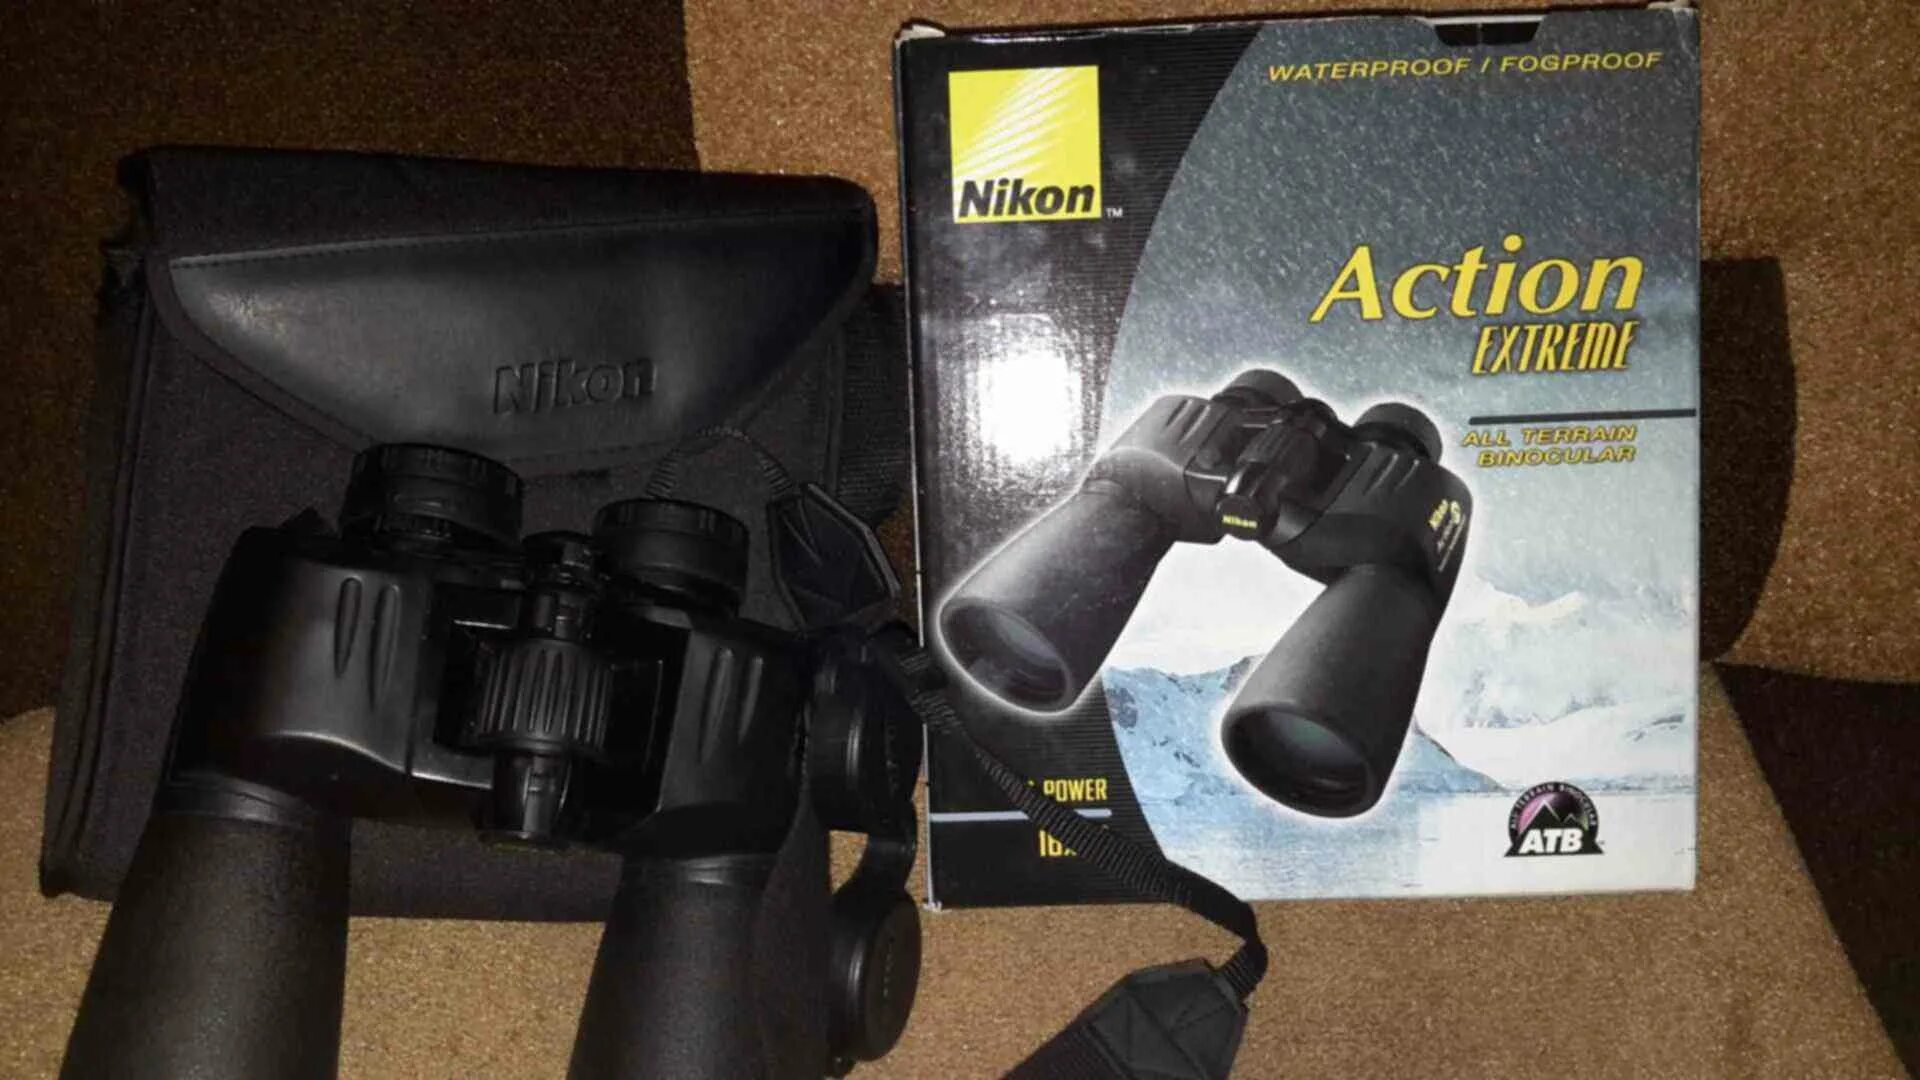 Active 16. Бинокль Nikon Action ex wp 16x50 CF. Nikon Action 10x50 бинокль Binocular Glasses. Прибор ночного видения - бинокль Nikon Action ex 16х50мм.